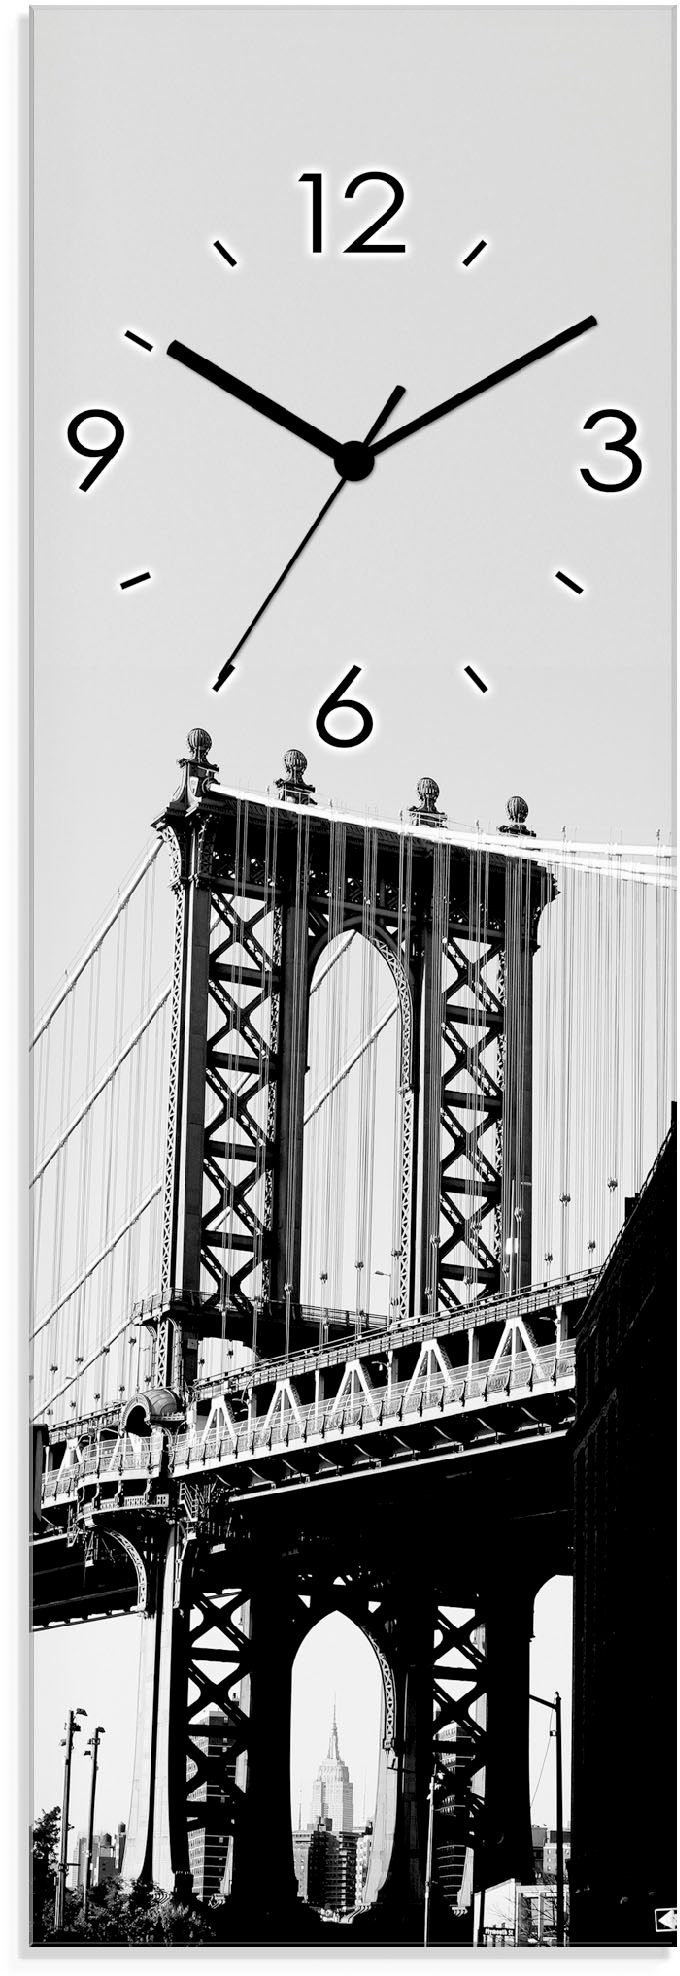 Artland Wanduhr Dumbo Manhattan Bridge New York (wahlweise mit Quarz- oder Funkuhrwerk, lautlos ohne Tickgeräusche)